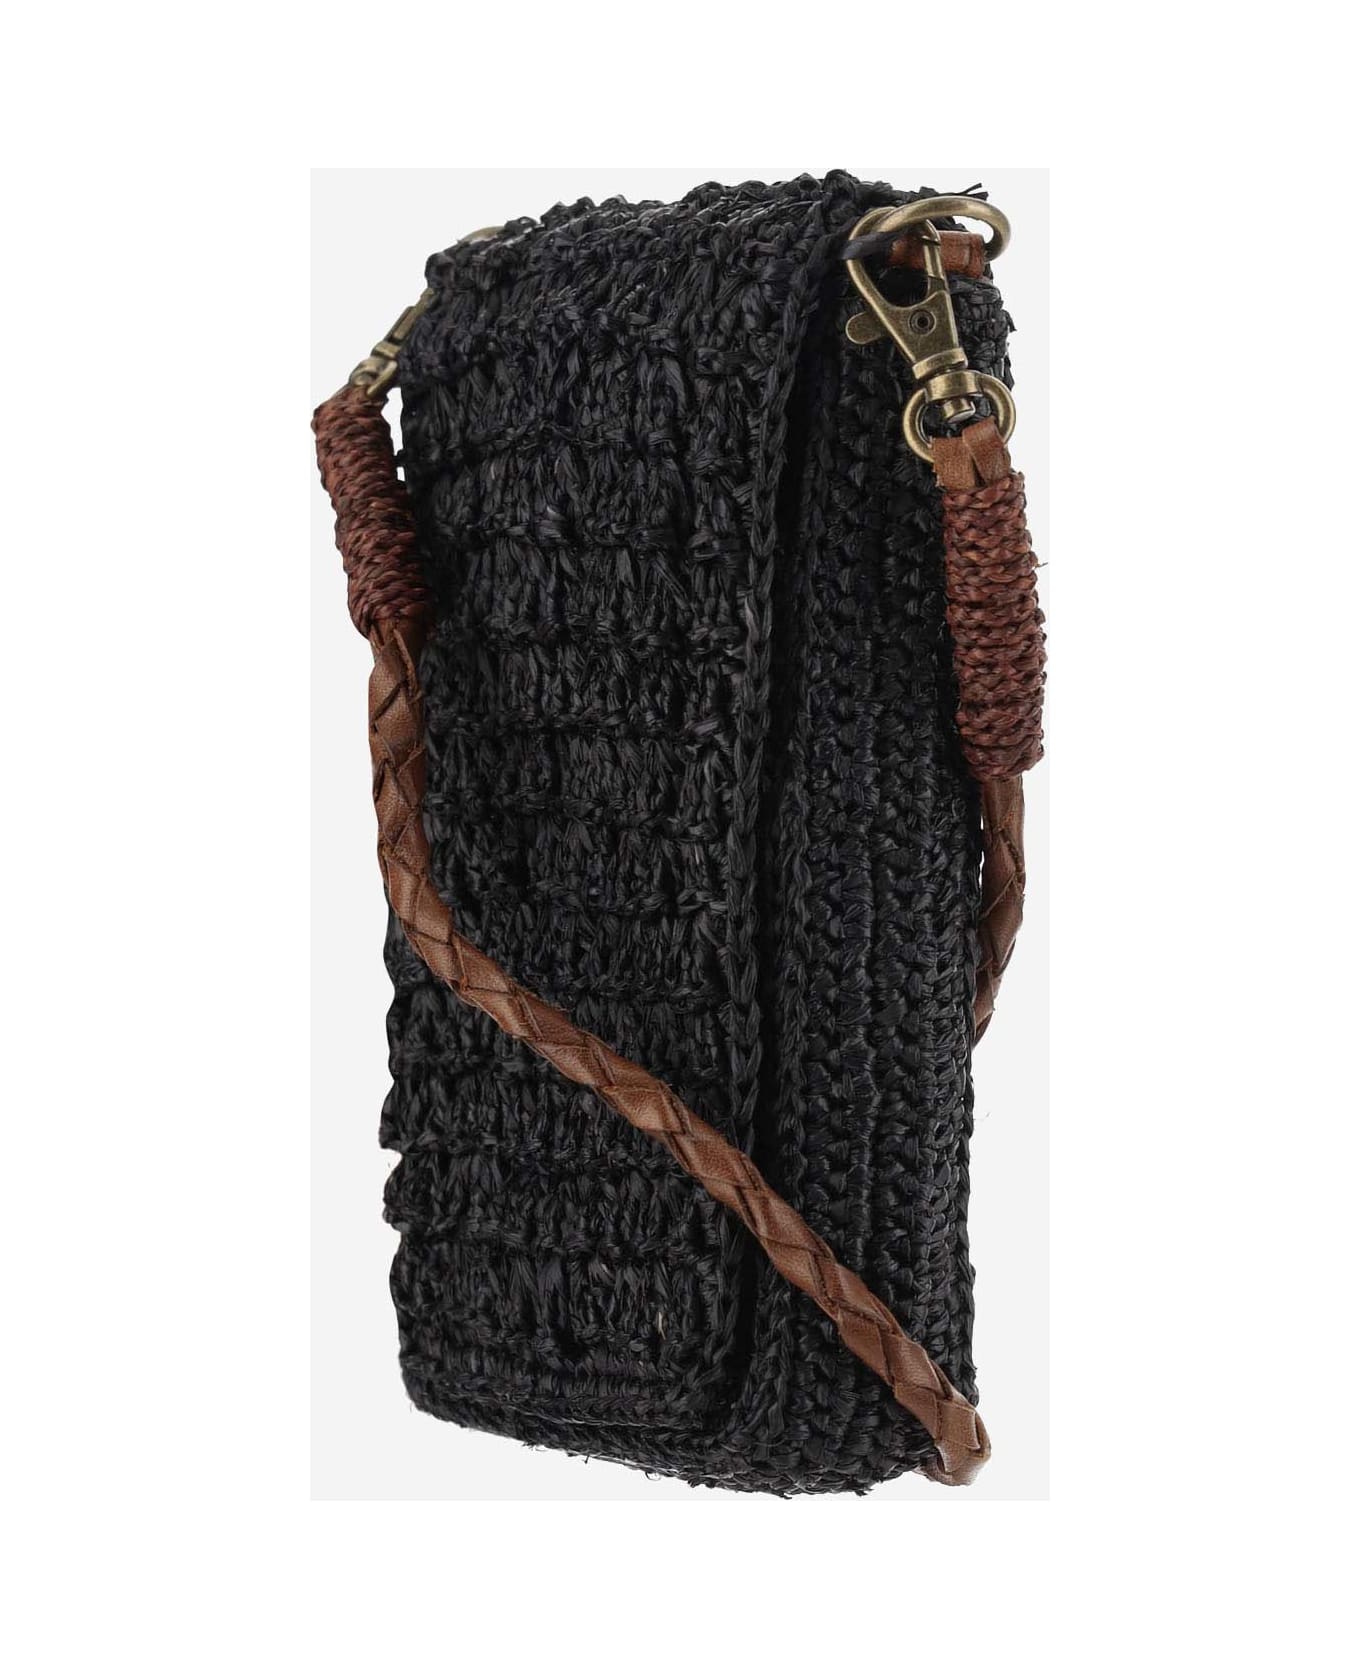 Ibeliv Raffia Bag With Leather Details - Black